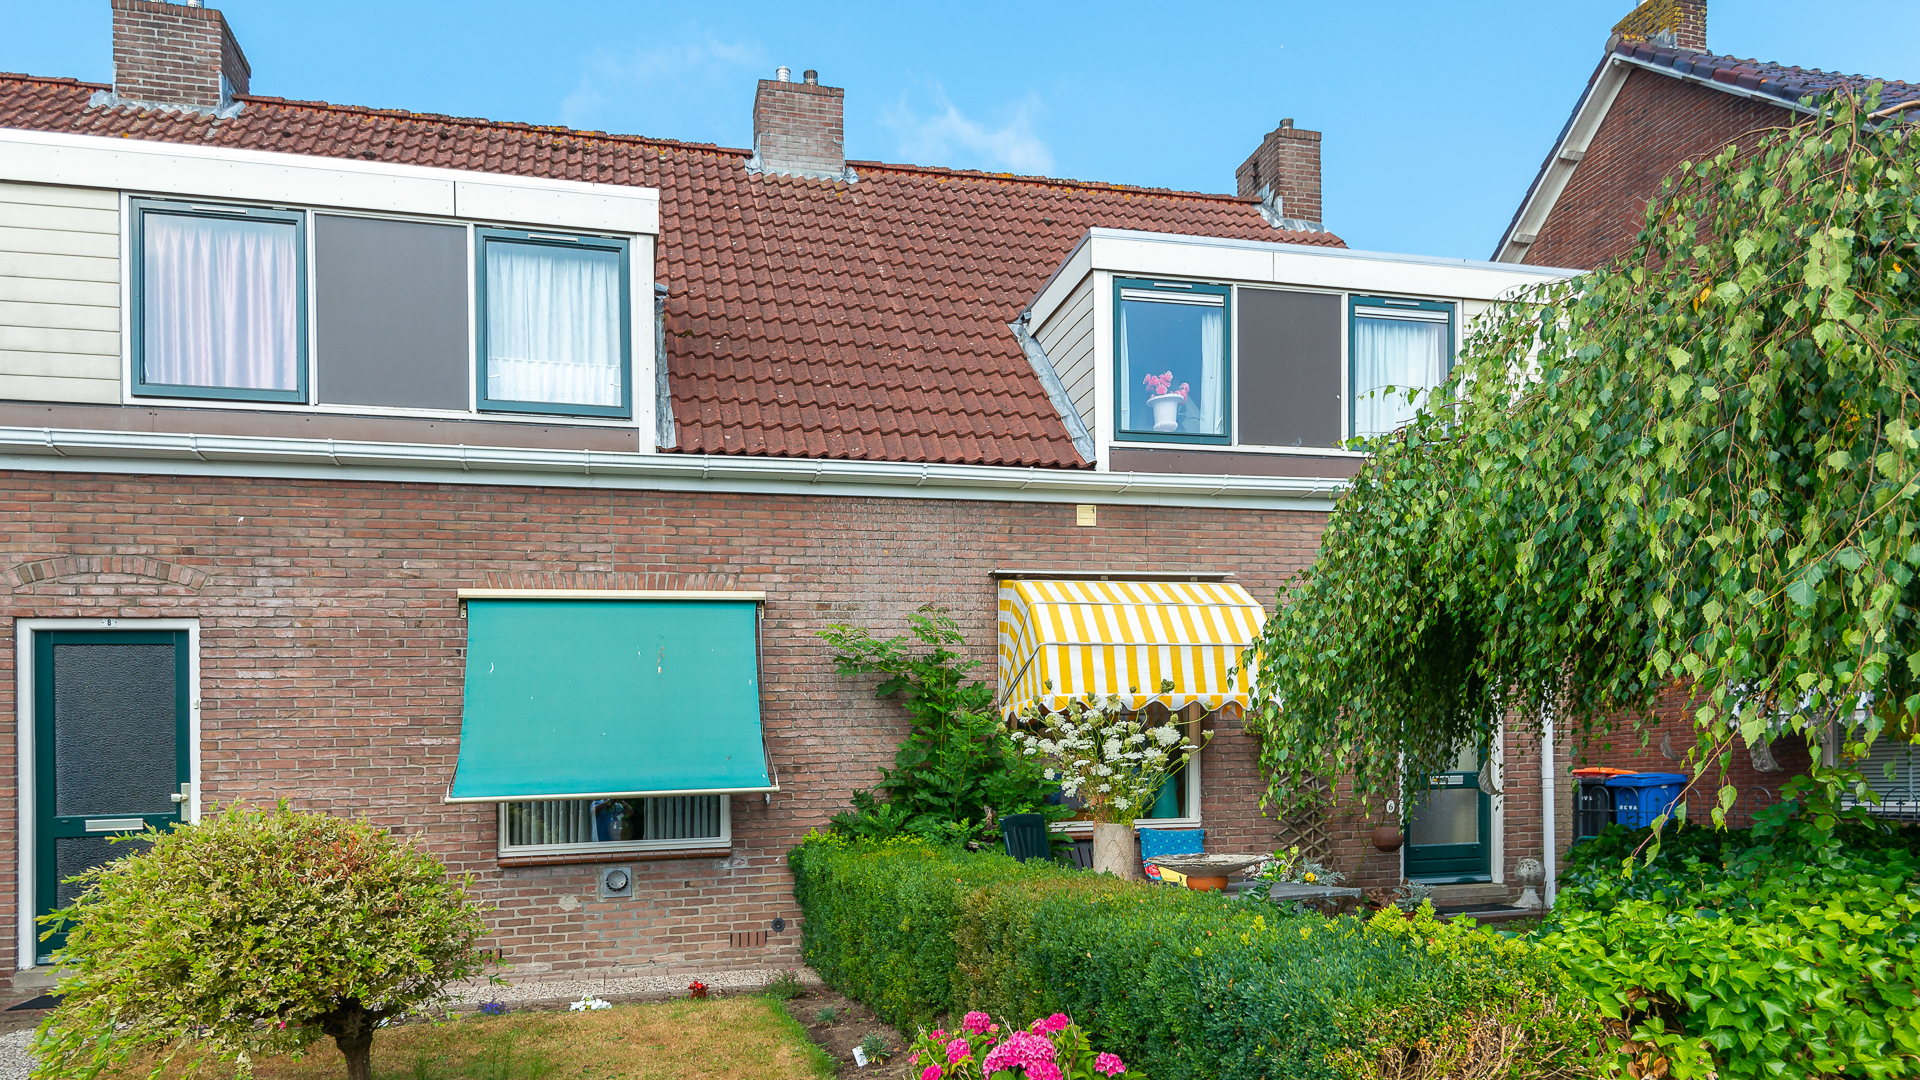 Dorus Rijkersstraat 8, 8281 DH Genemuiden, Nederland